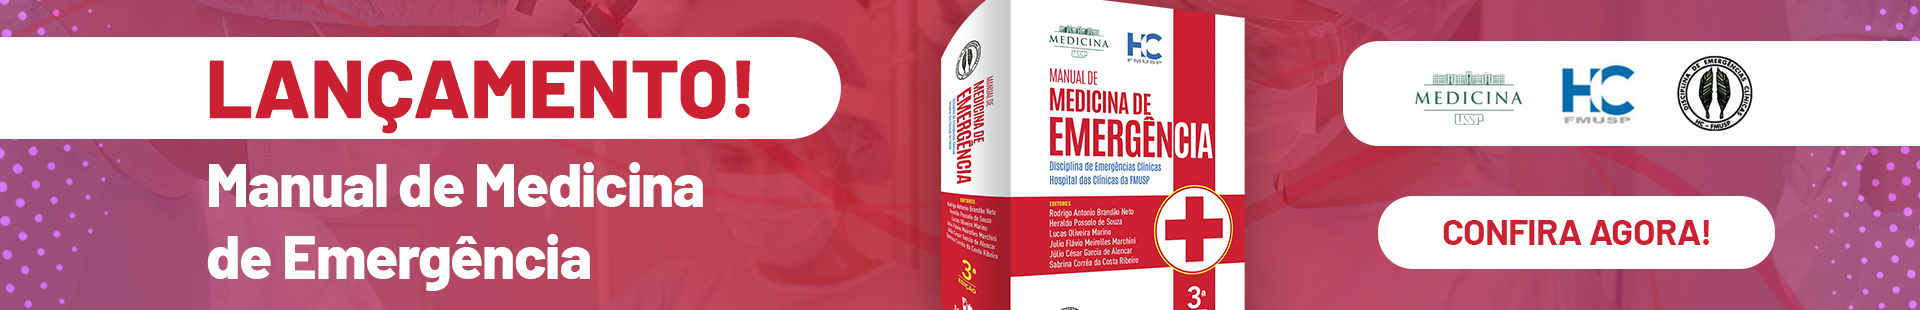 Livro medicina de emergência